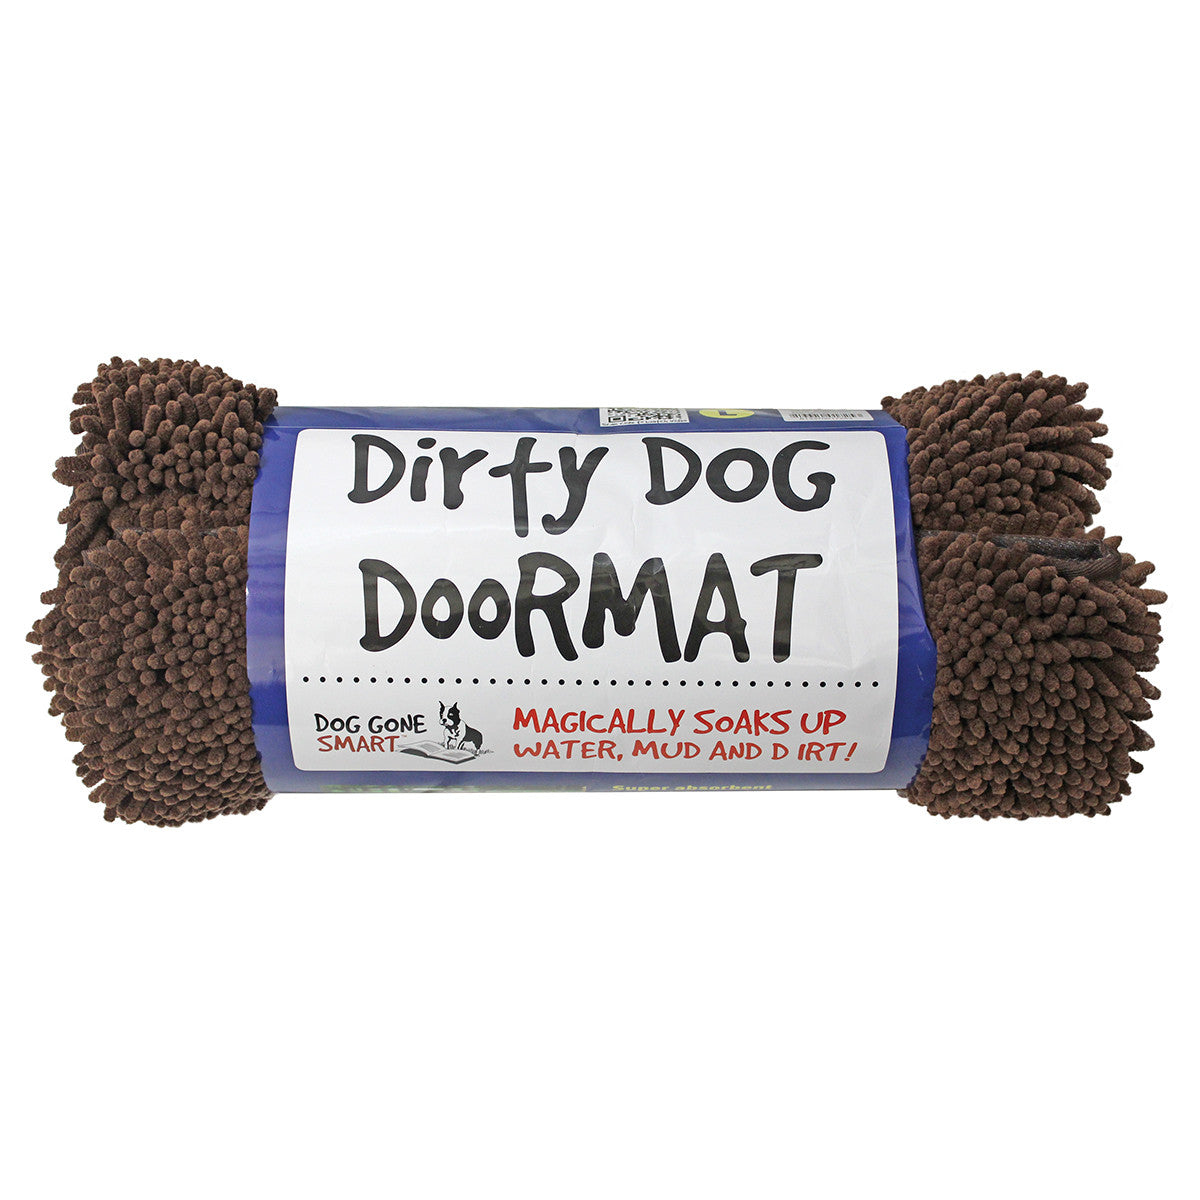 https://www.peticular.com.au/cdn/shop/products/103-7948_dirty_dog_doormat_c_1.jpg?v=1618549379&width=1445